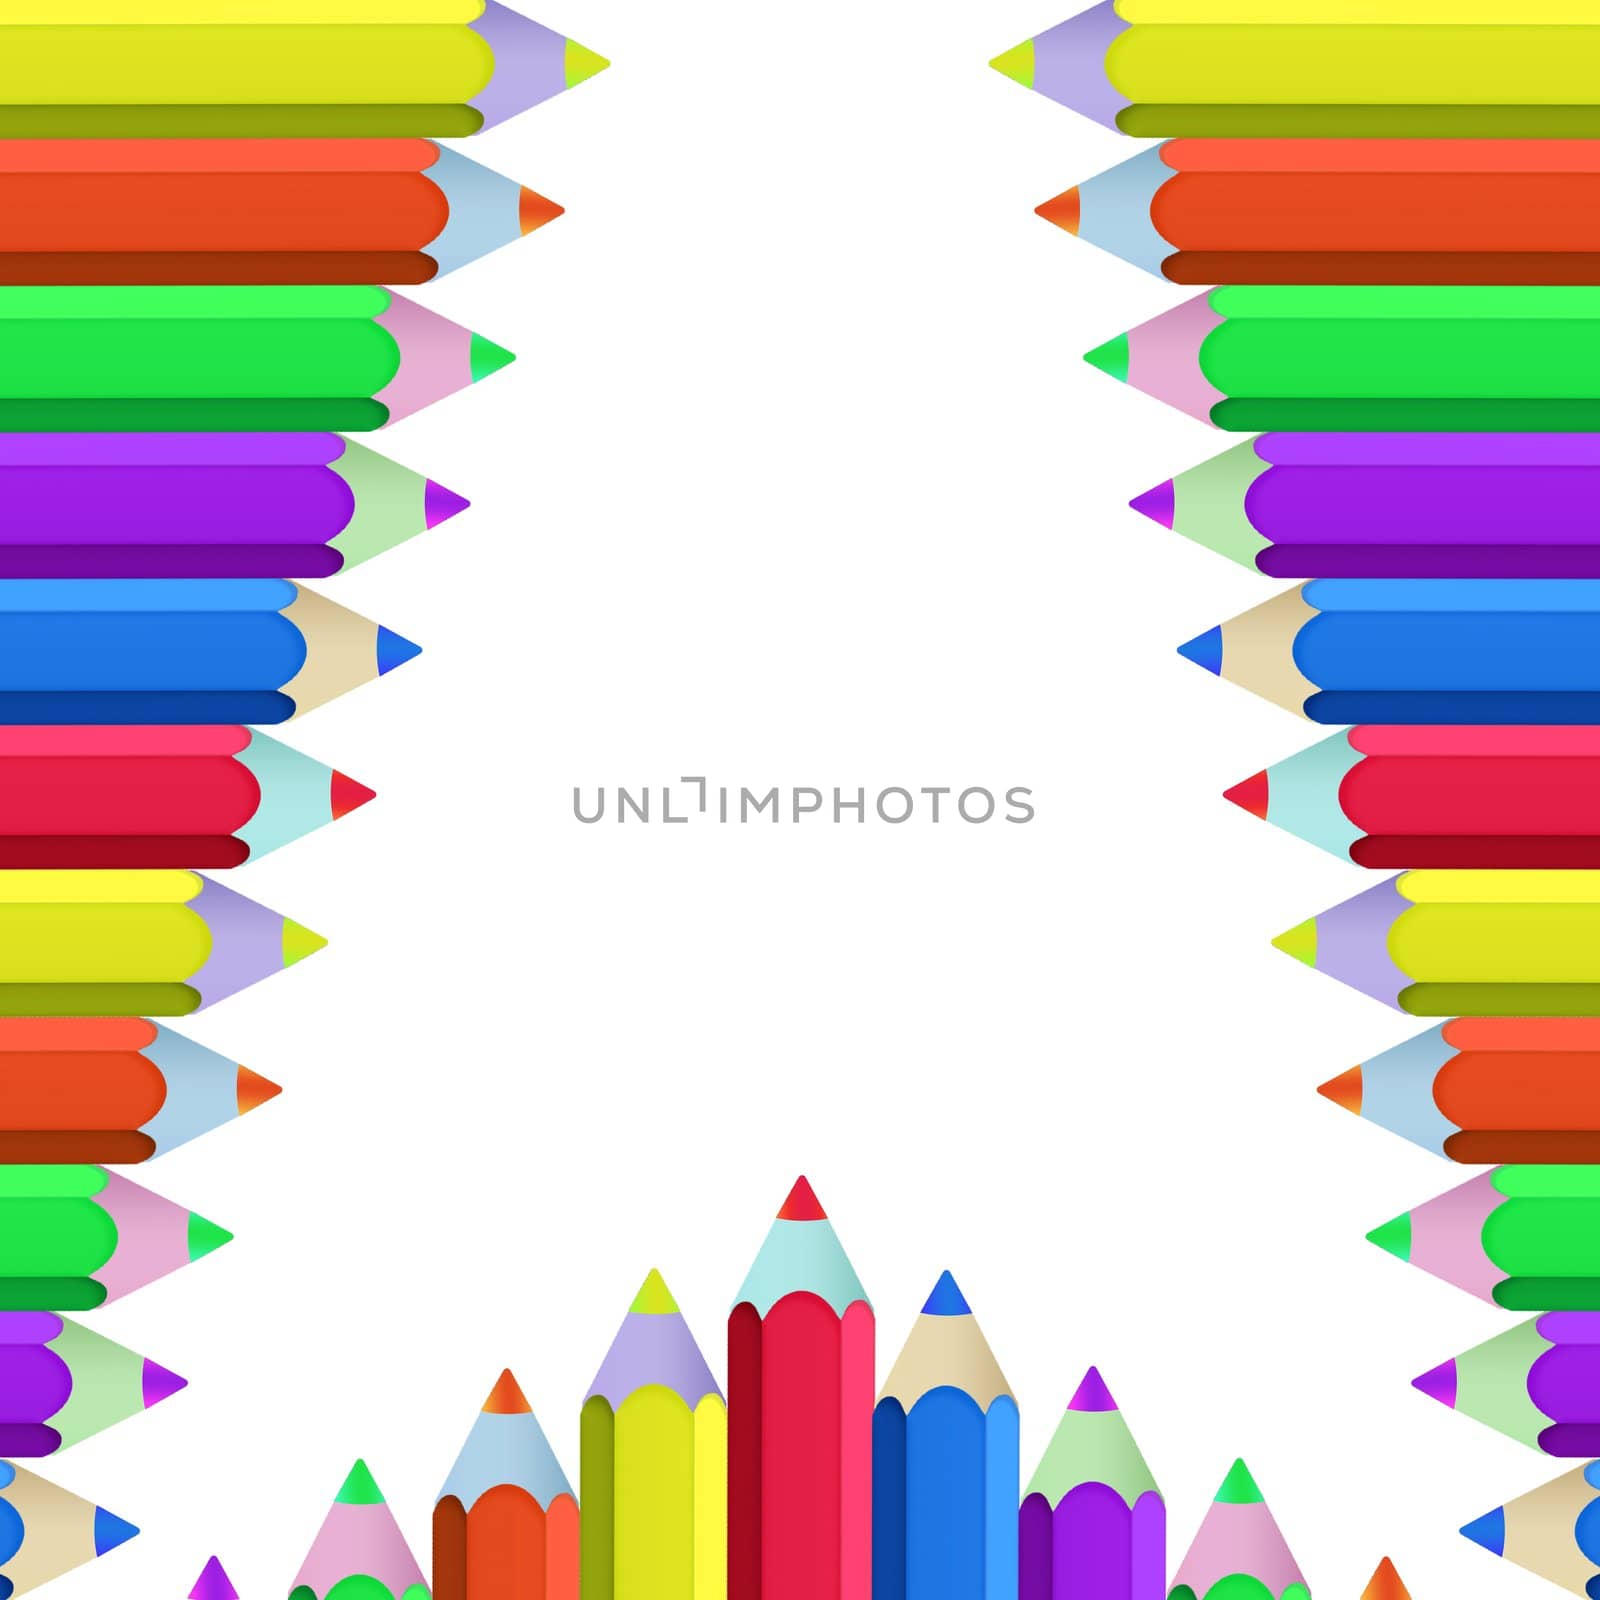 Color pencils by phanlop88